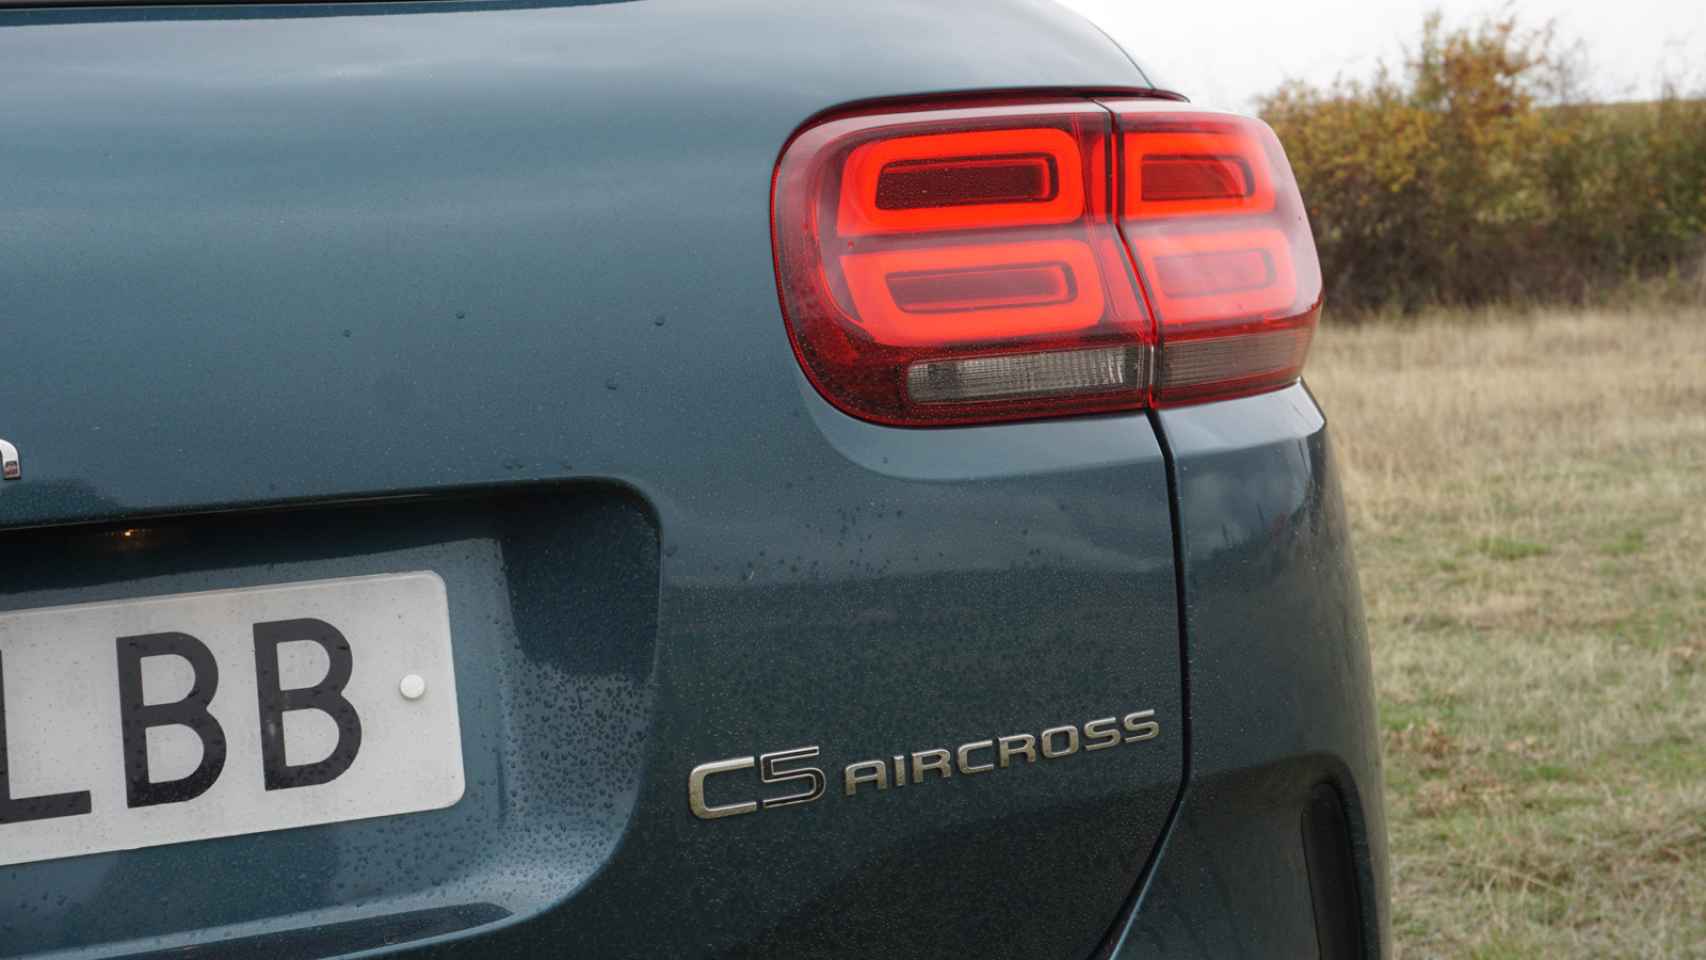 Detalle de los grupos ópticos traseros del Citroën C5 Aircross.